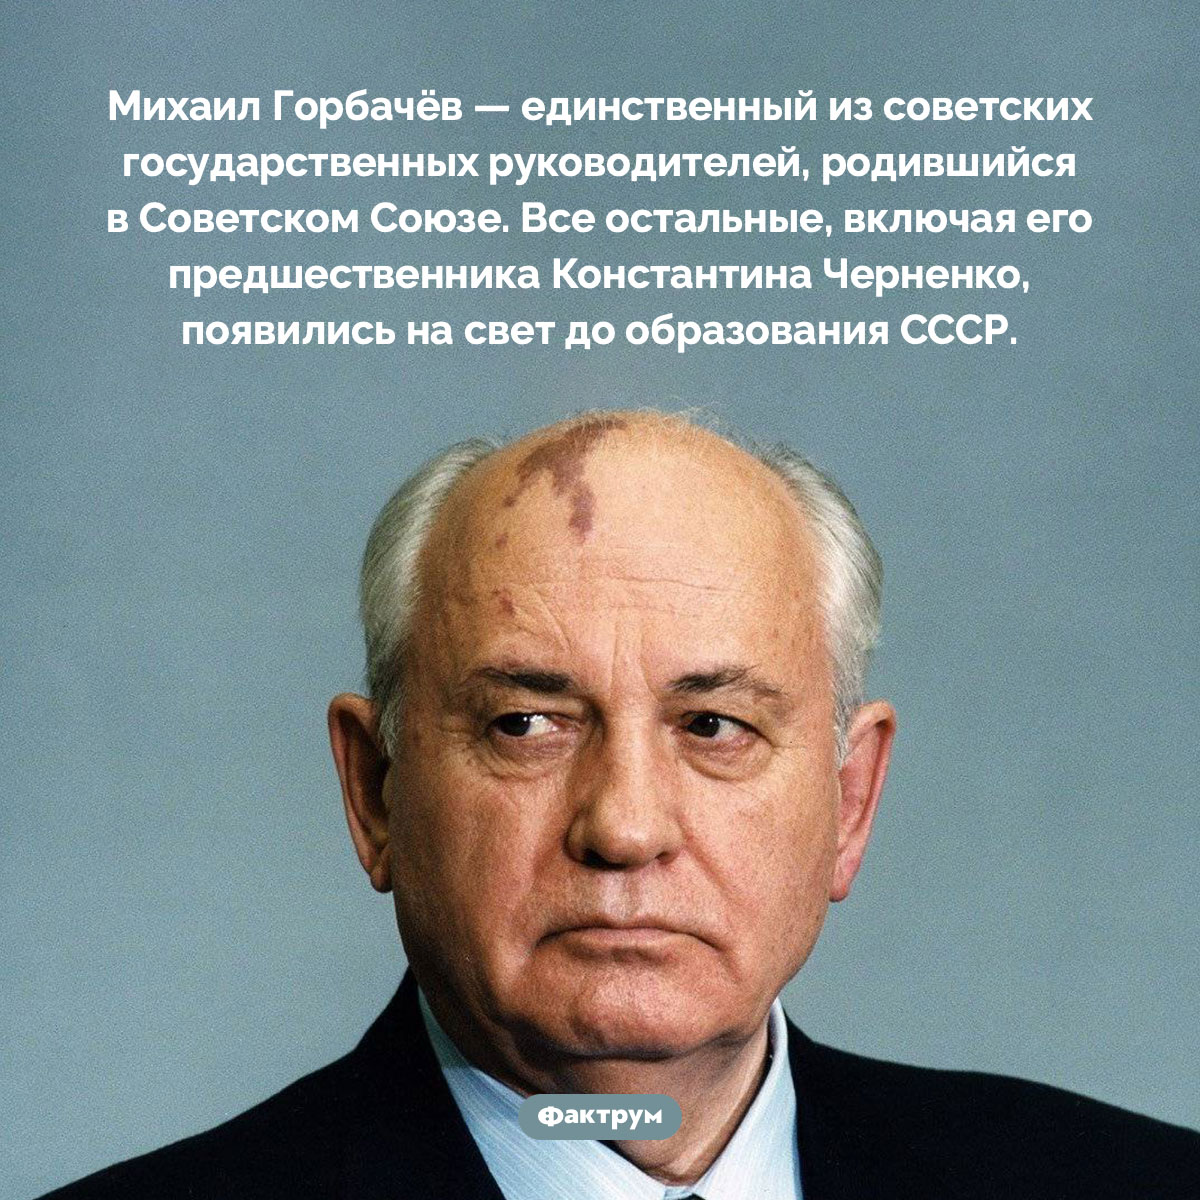 Из всех советских лидеров только Михаил Горбачёв родился при СССР